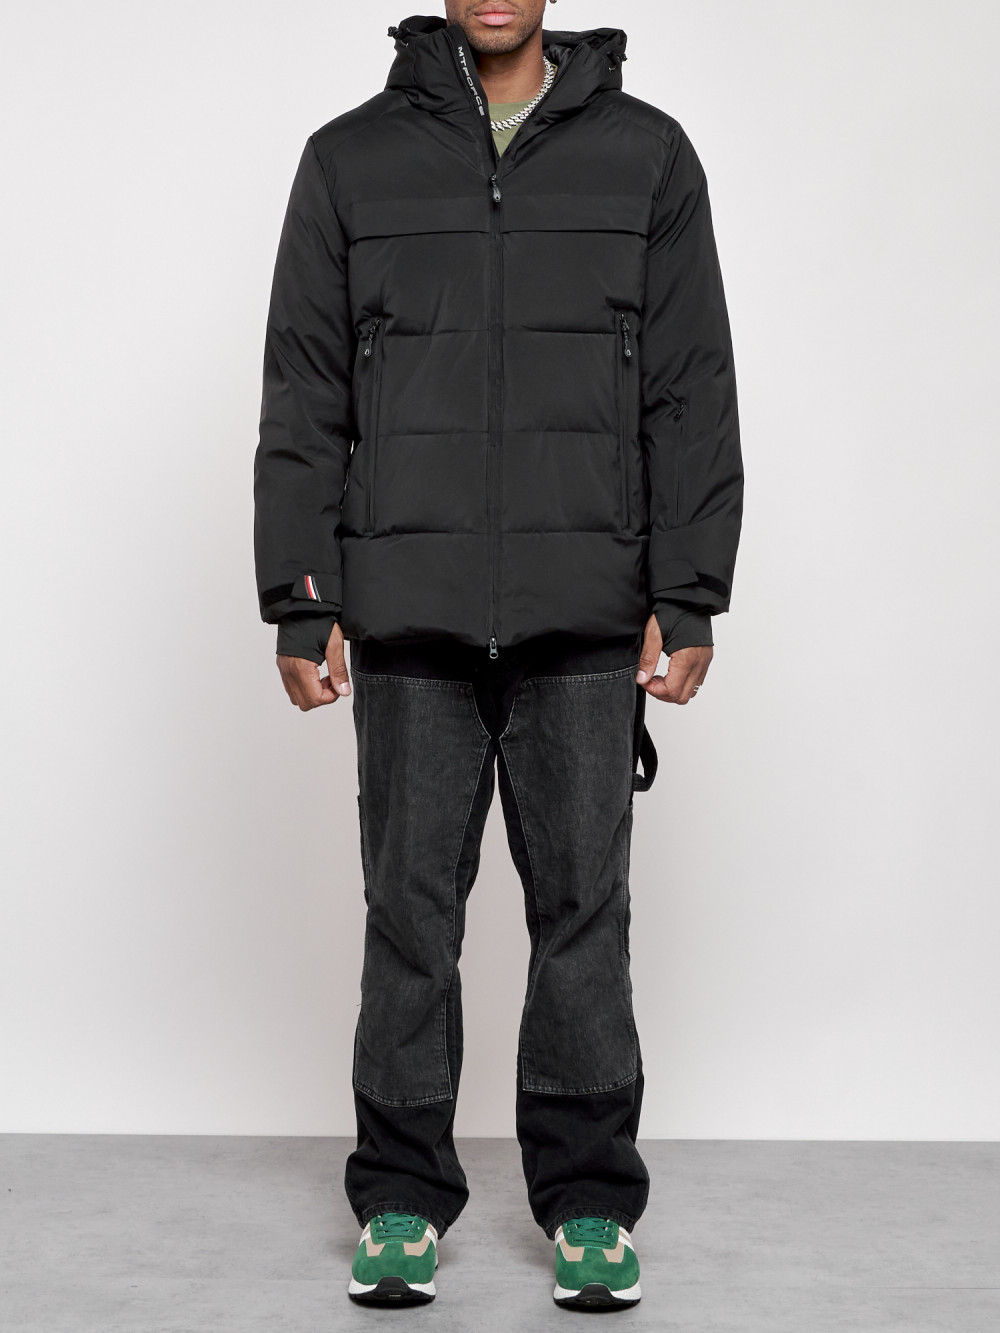 Куртка мужская зимняя горнолыжная Chunmai AD2356Ch, 56